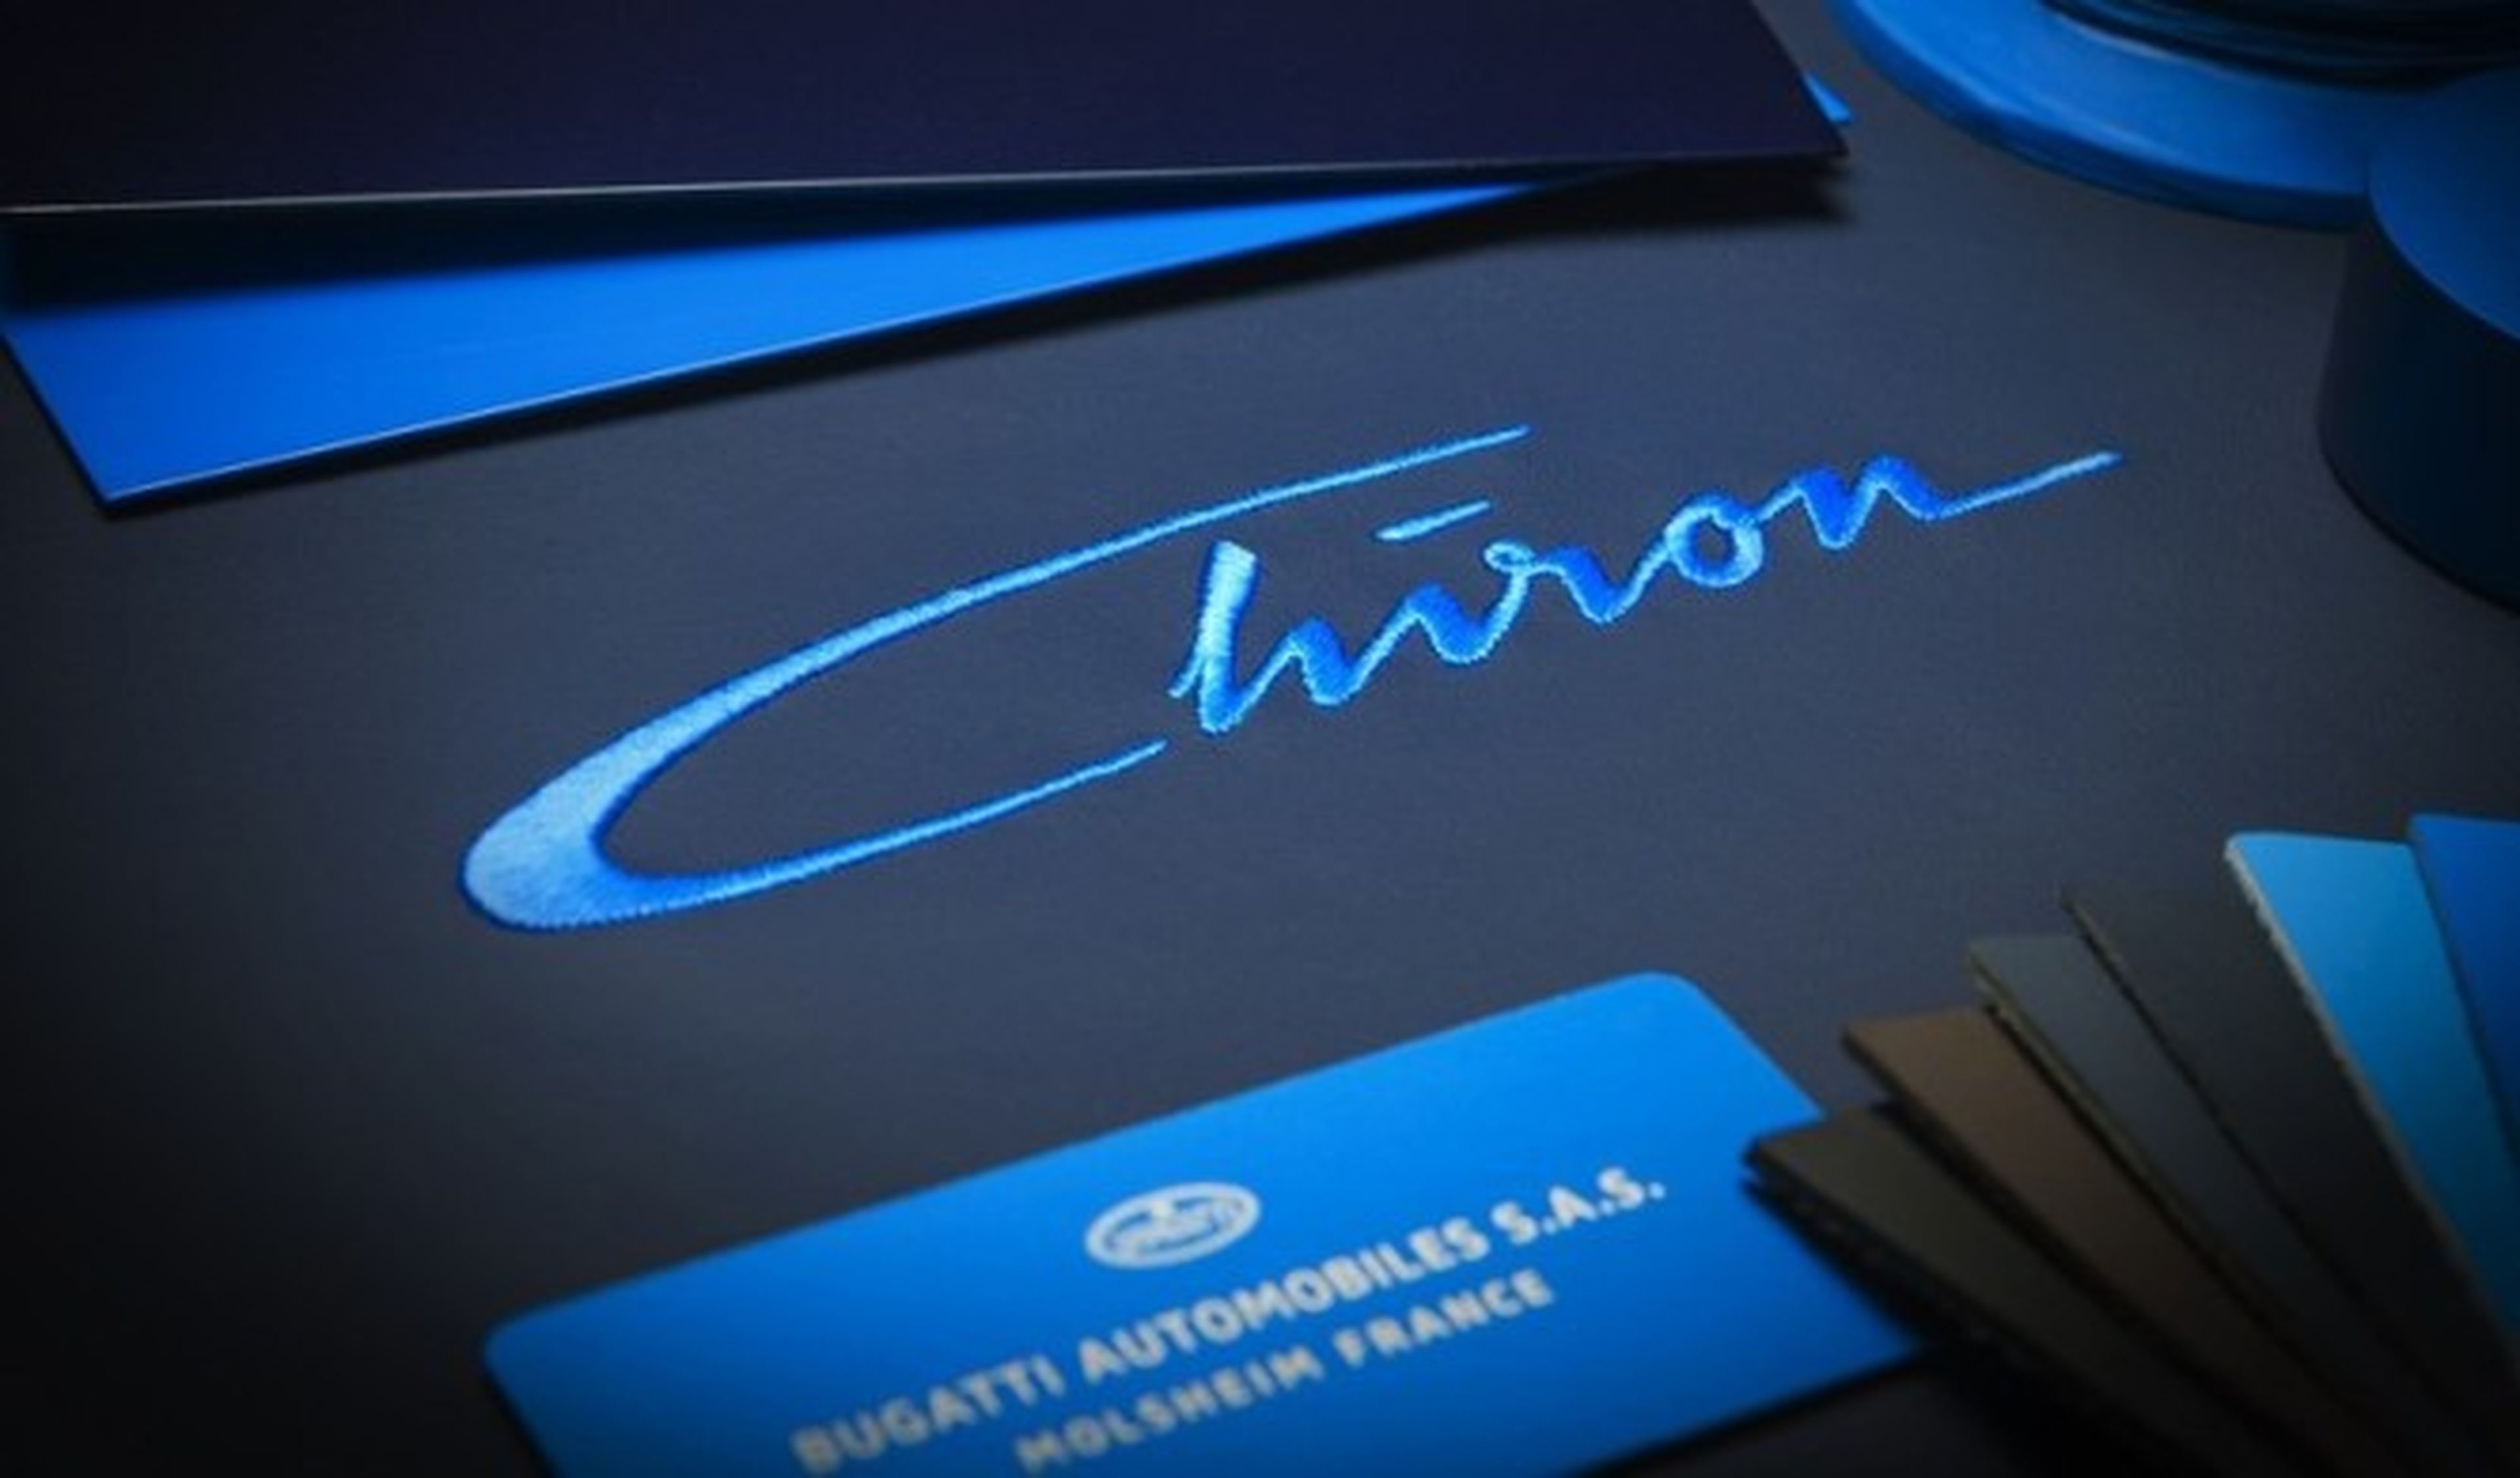 Confirmado el nombre de Chiron para el nuevo Bugatti